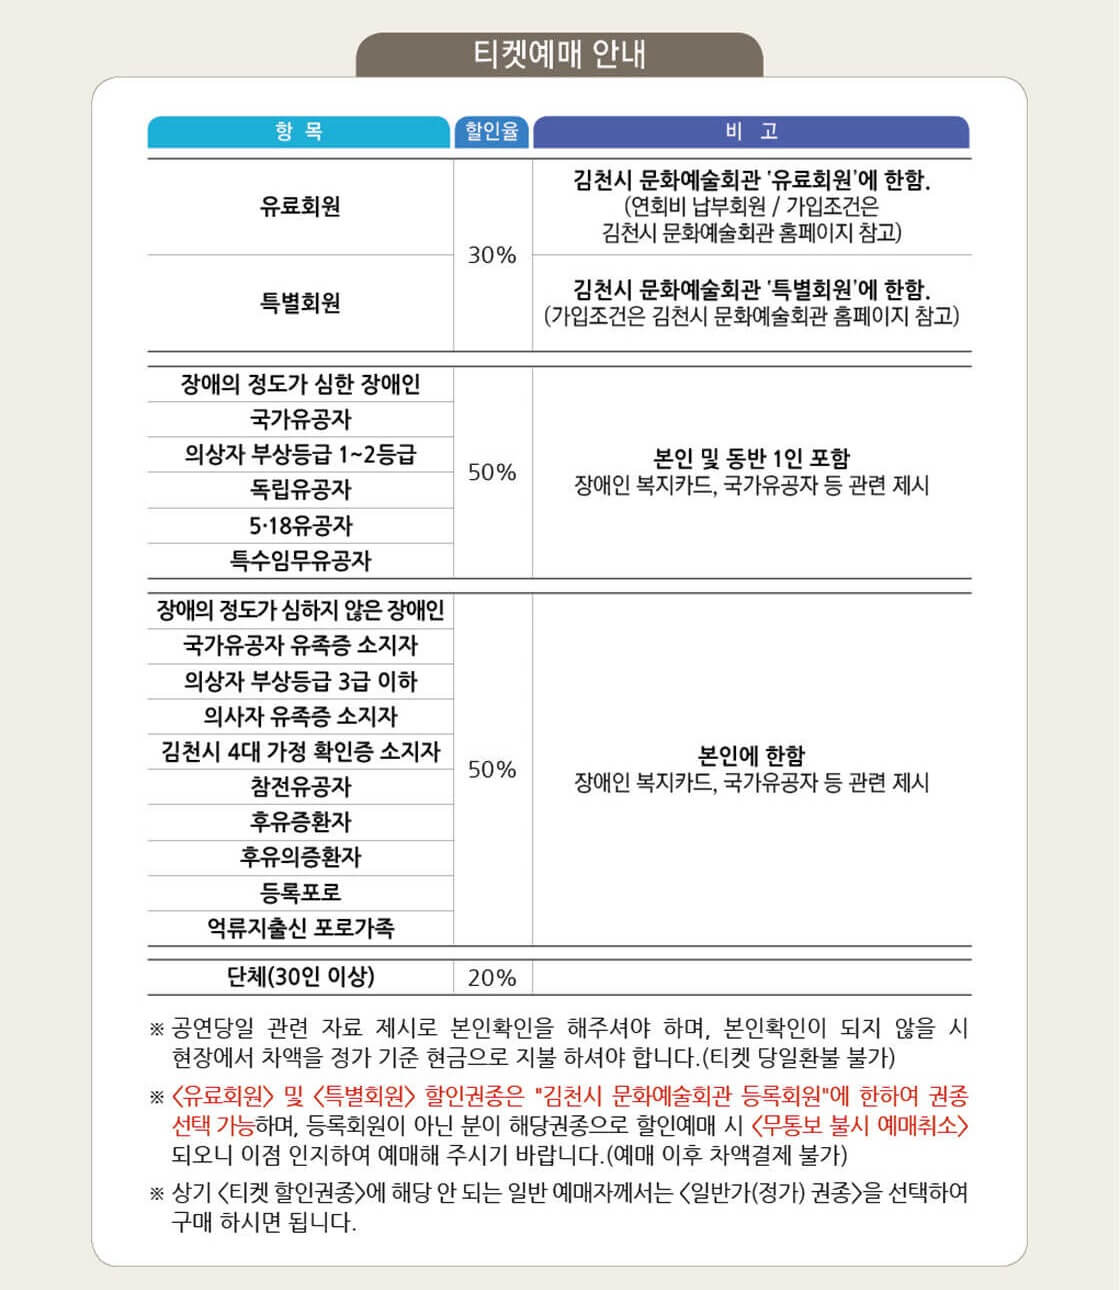 김천 공연 - 할인정보